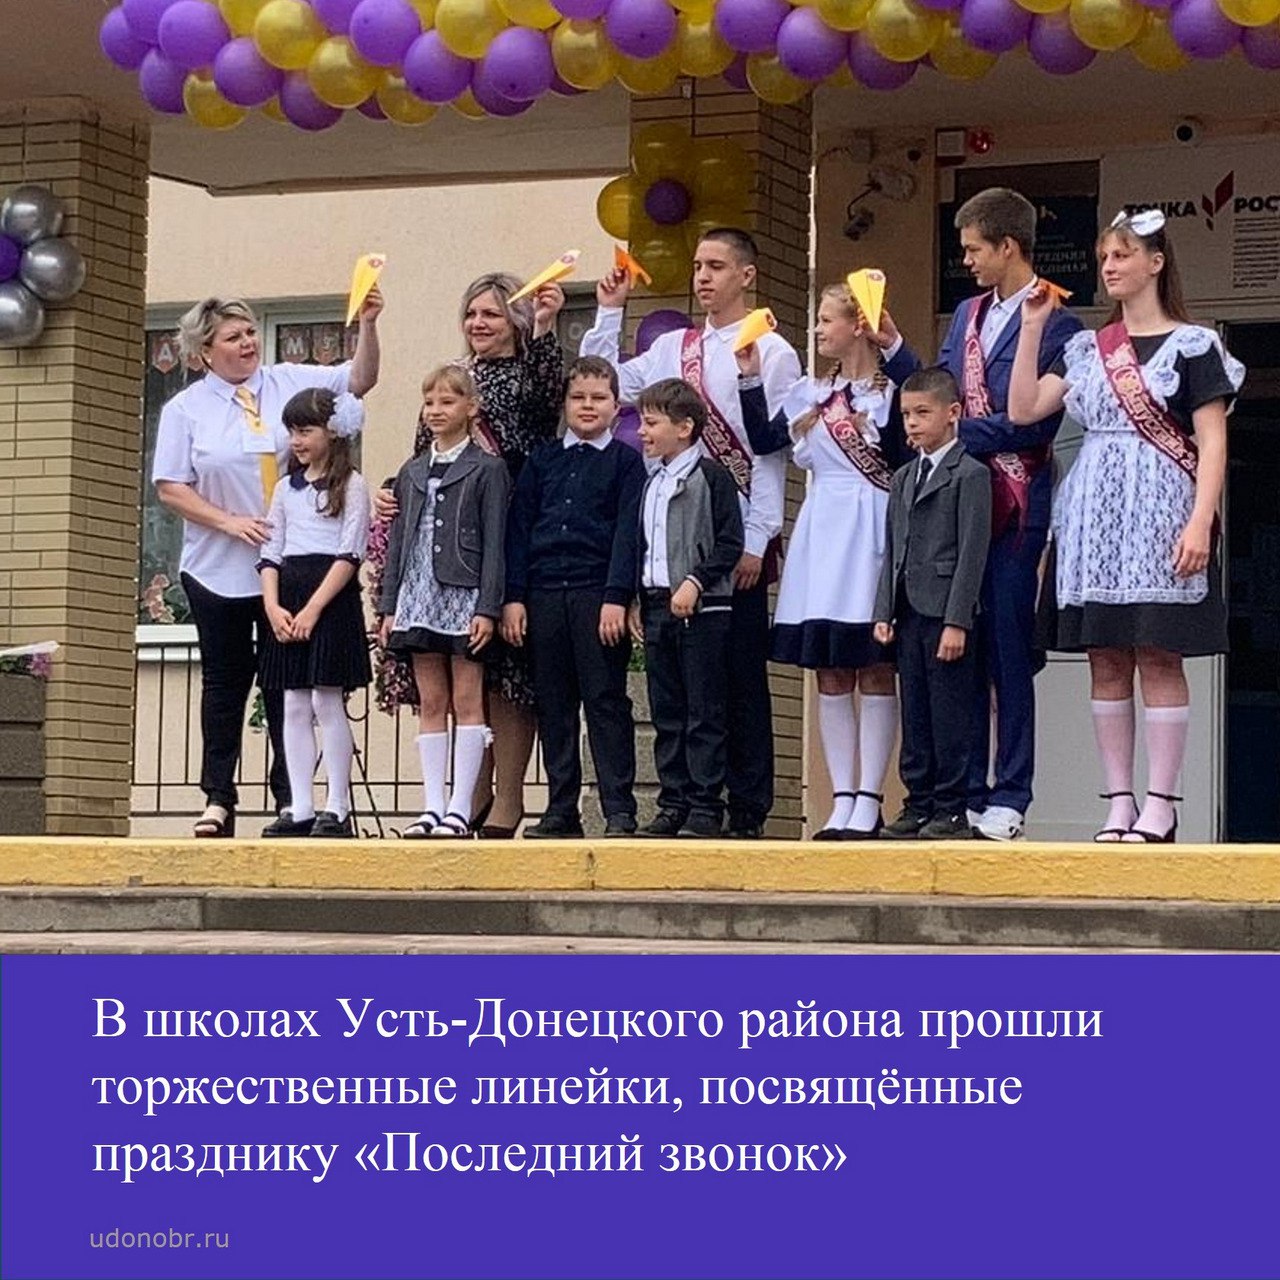 В школах Усть-Донецкого района прошли торжественные линейки, посвящённые празднику «Последний звонок»